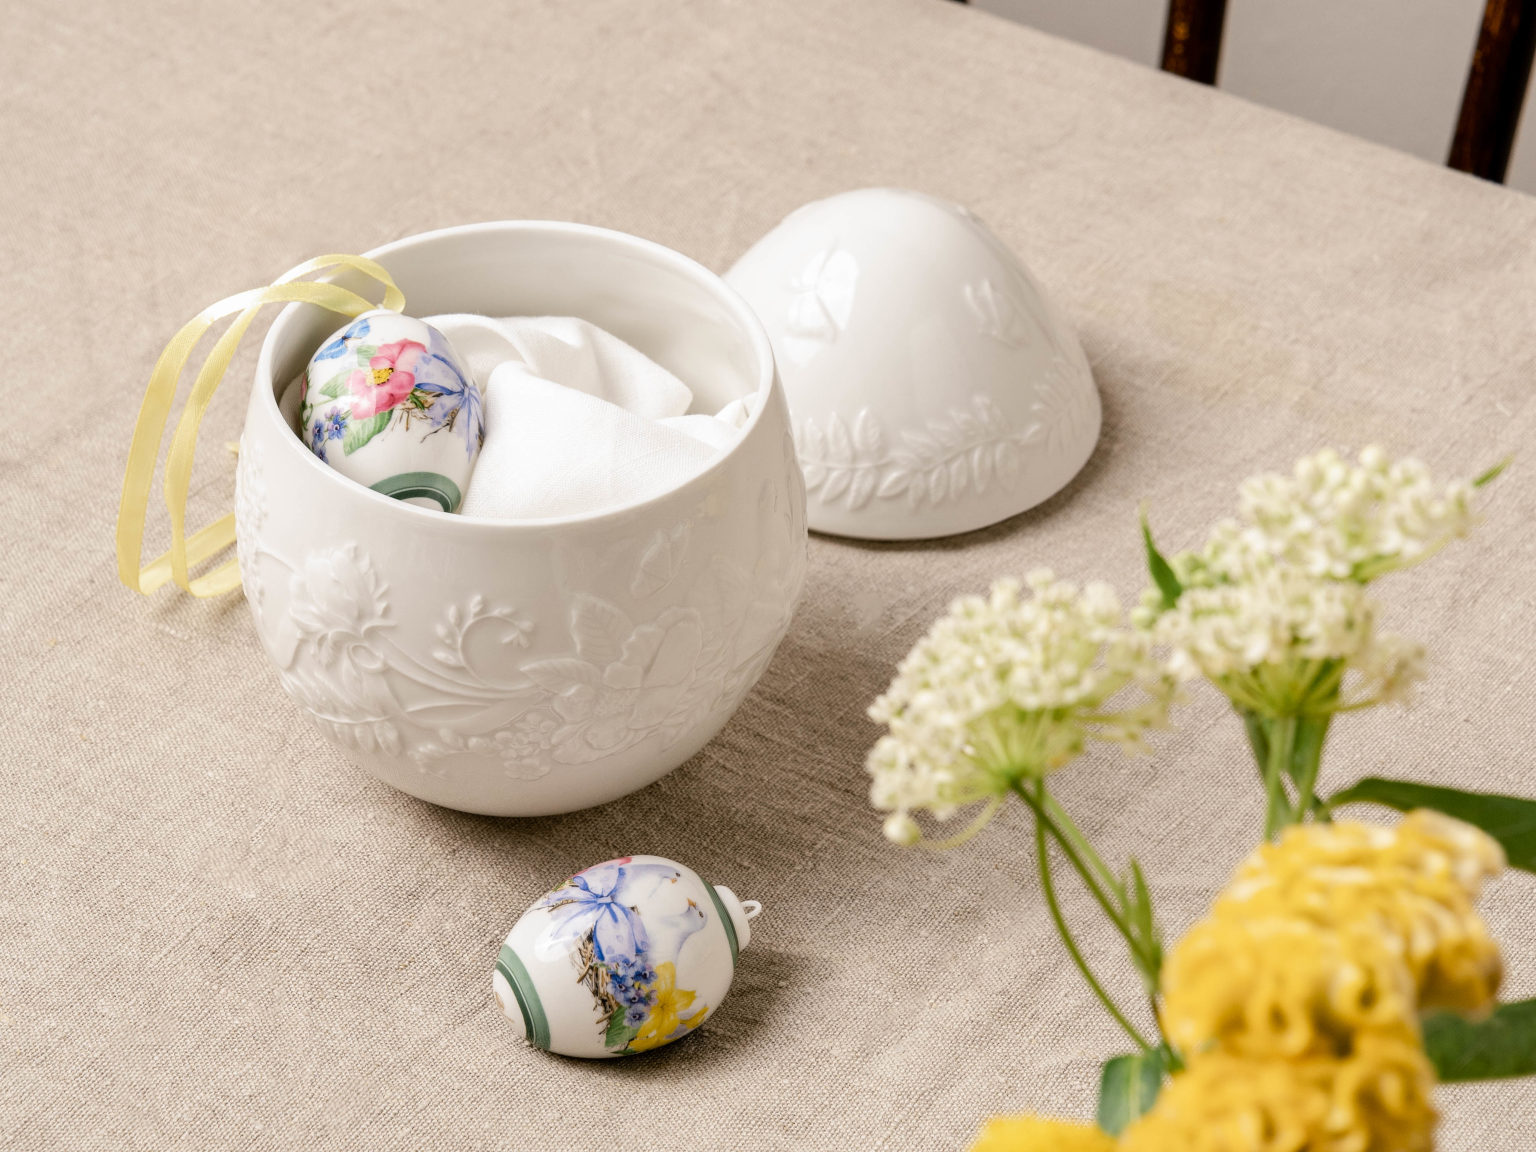 Hutschenreuther Maxi Dose aus Porzellan in Ei-Form mit Porzellan-Eier-Anhängern und Blumen im Vordergrund